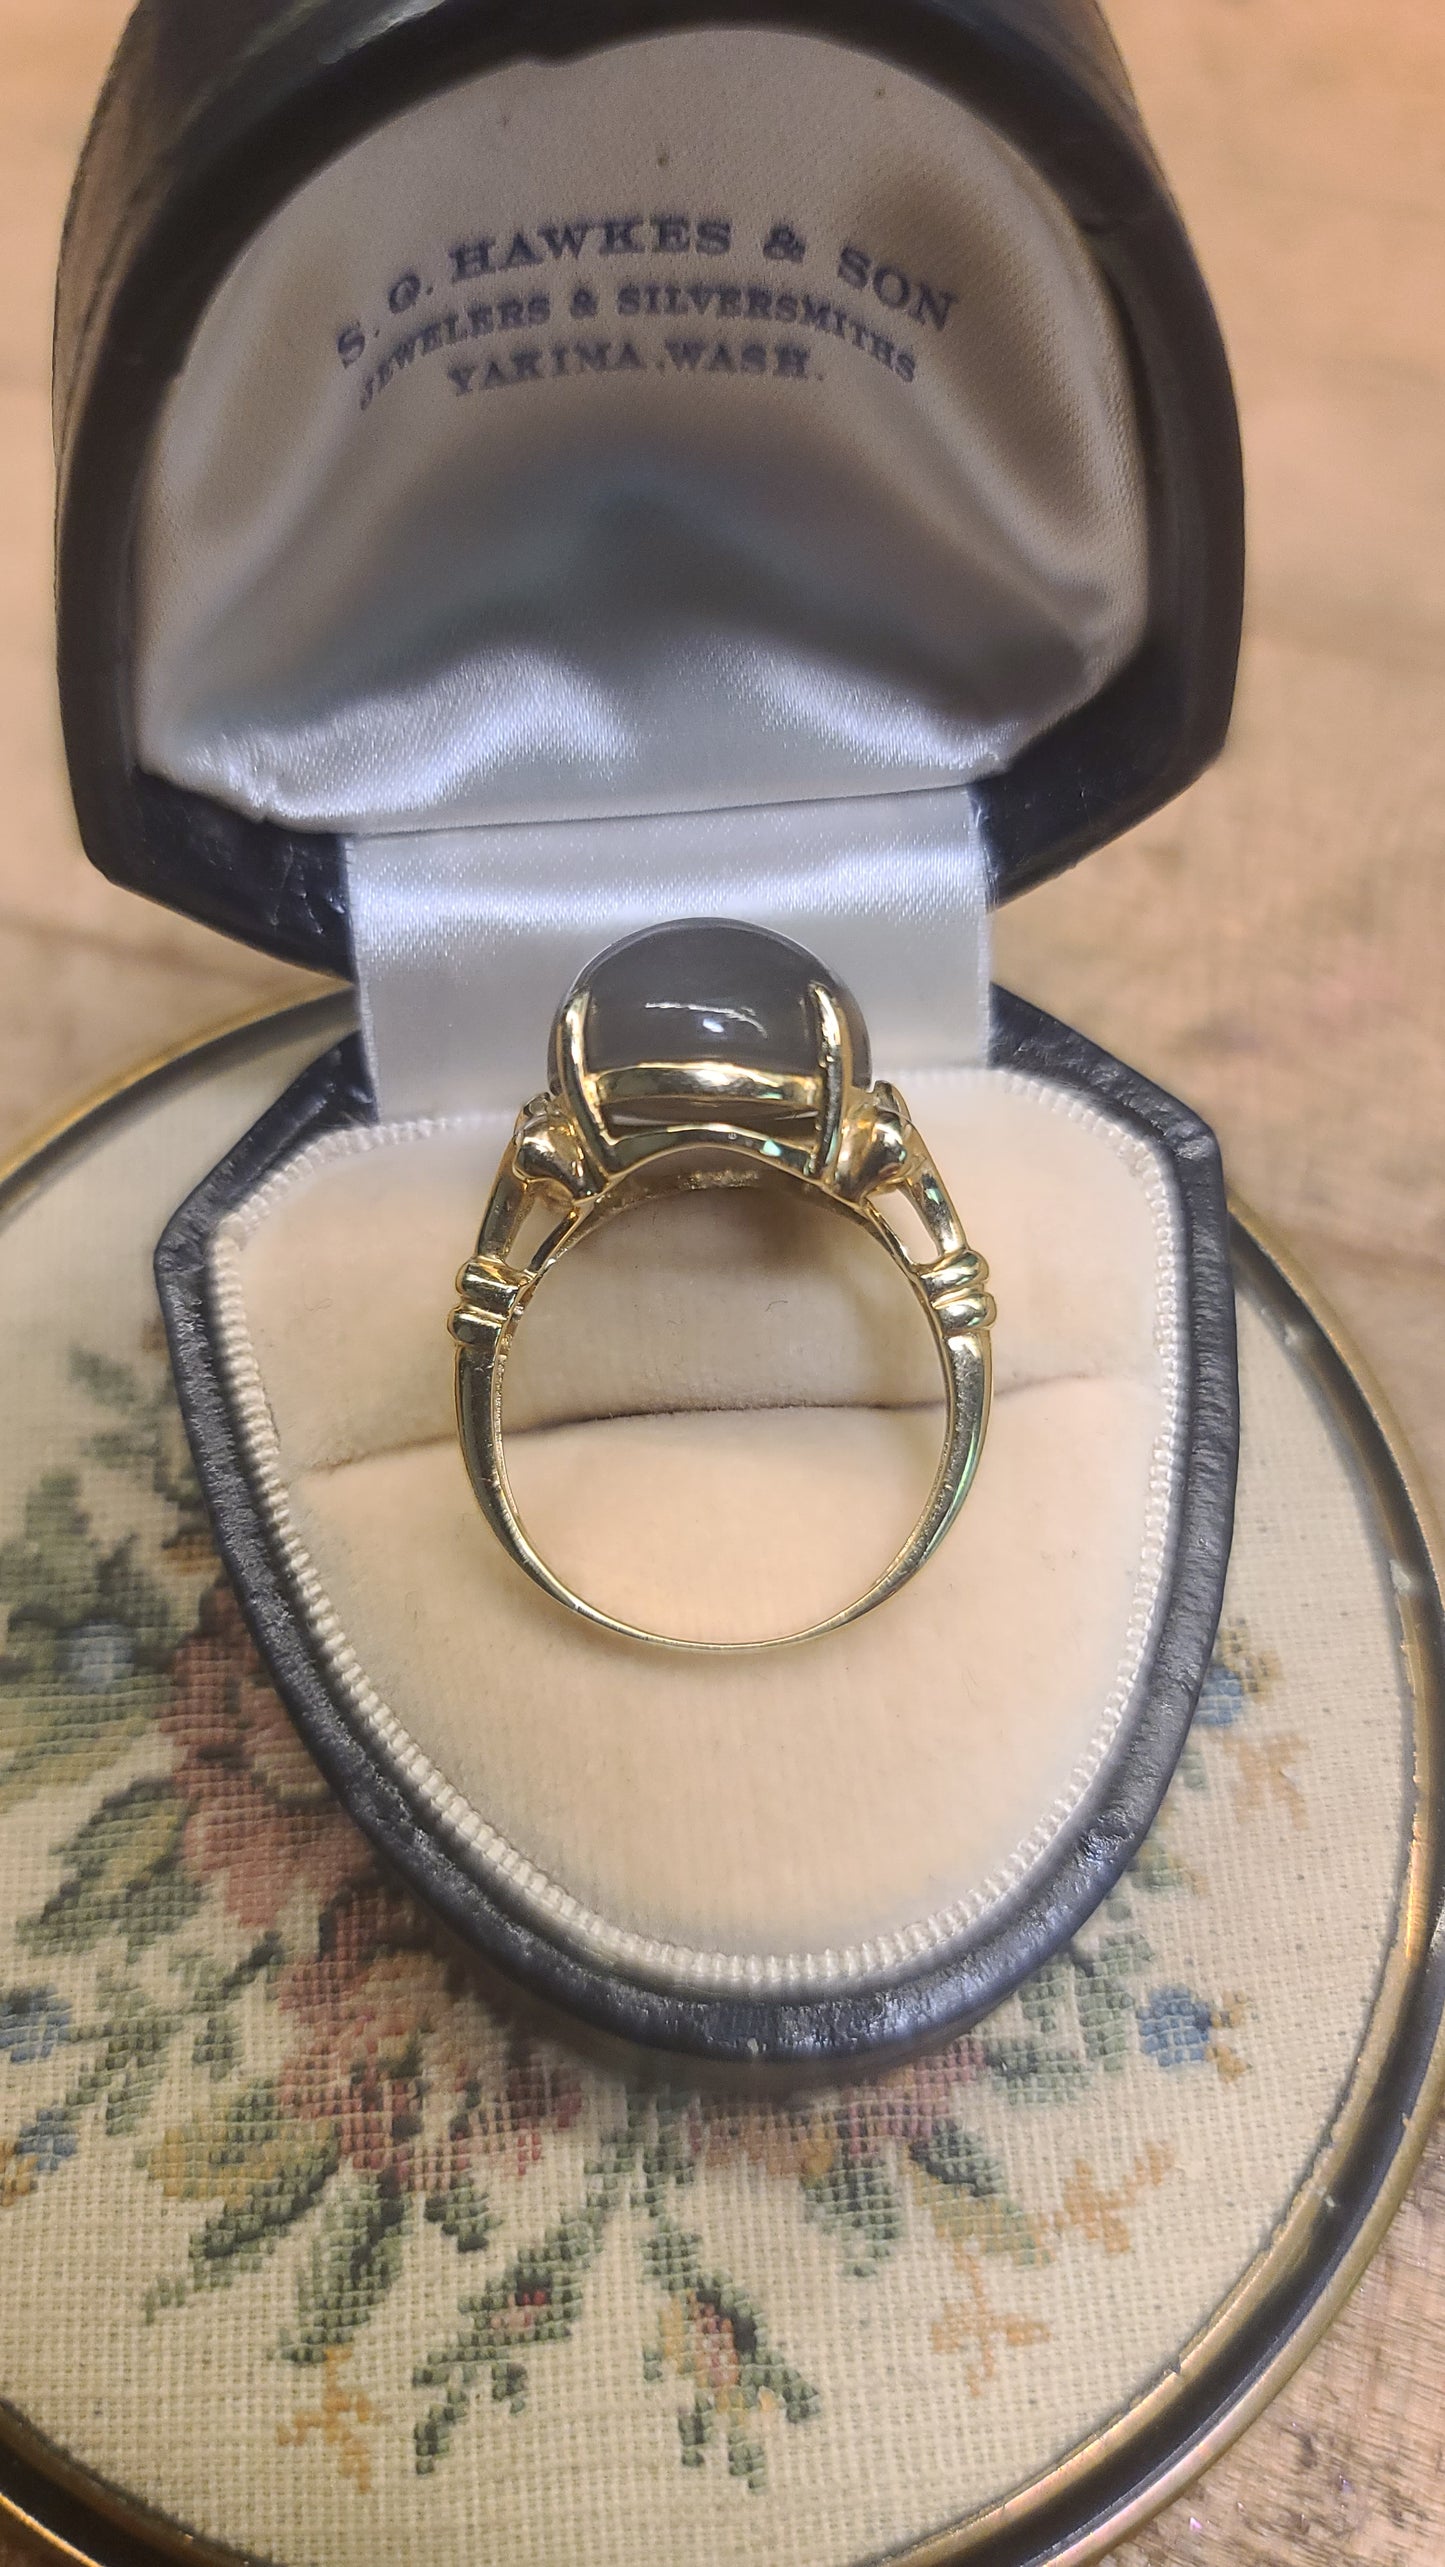 Gray Cabachon Moonstone Ring, 14K Yellow Gold